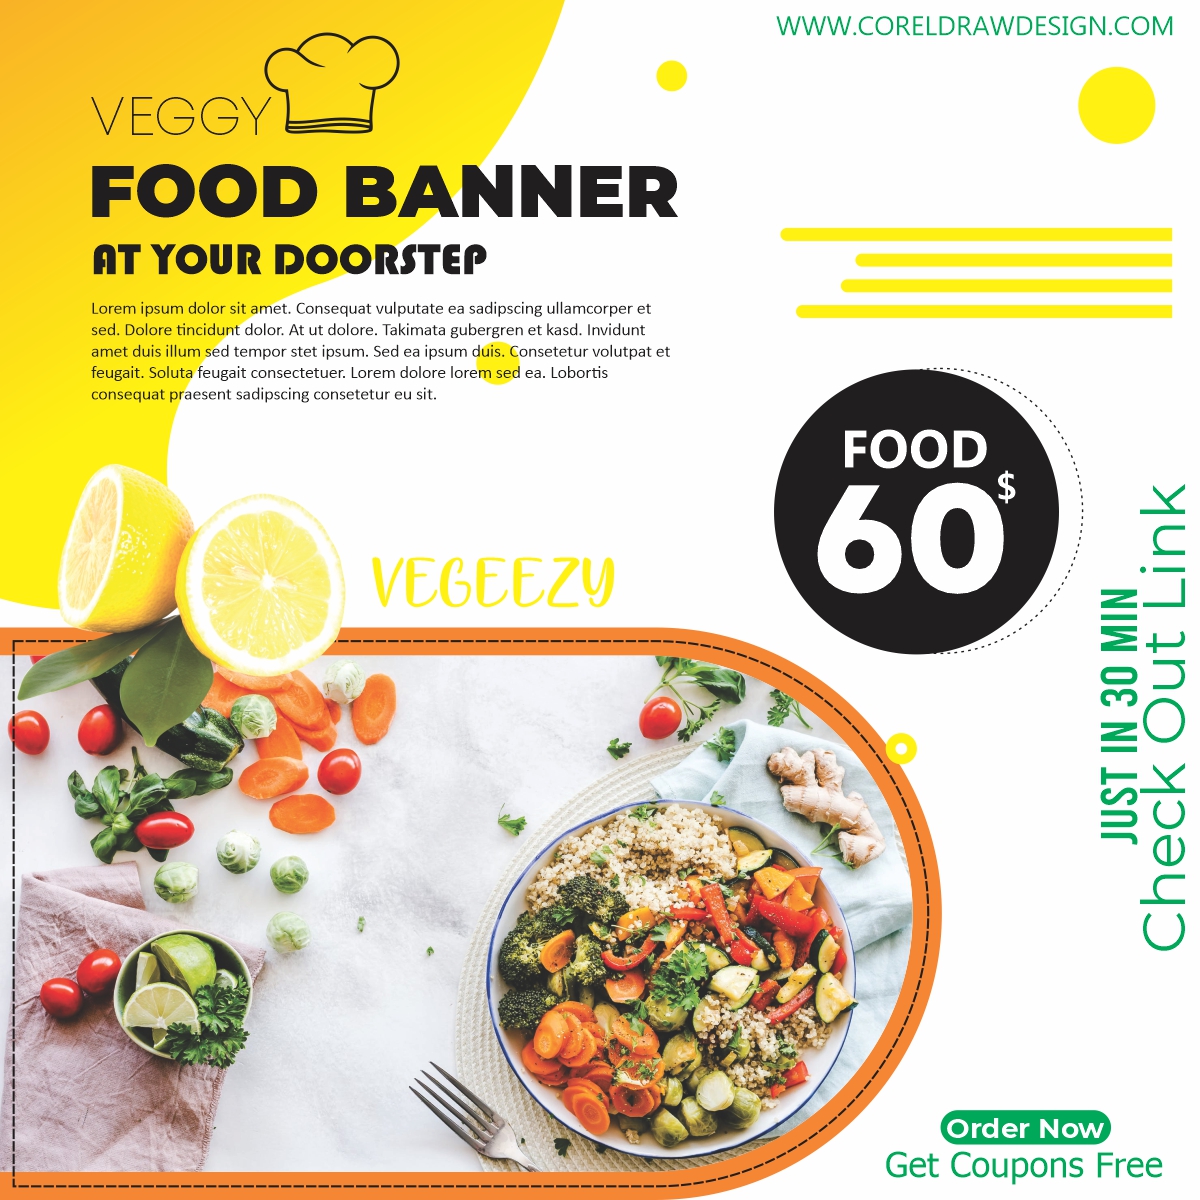 Download Download Vegeezy Food Banner Template Instagram Post Banner Coreldraw Design Download Free Cdr Vector Stock Images Tutorials Tips Tricks